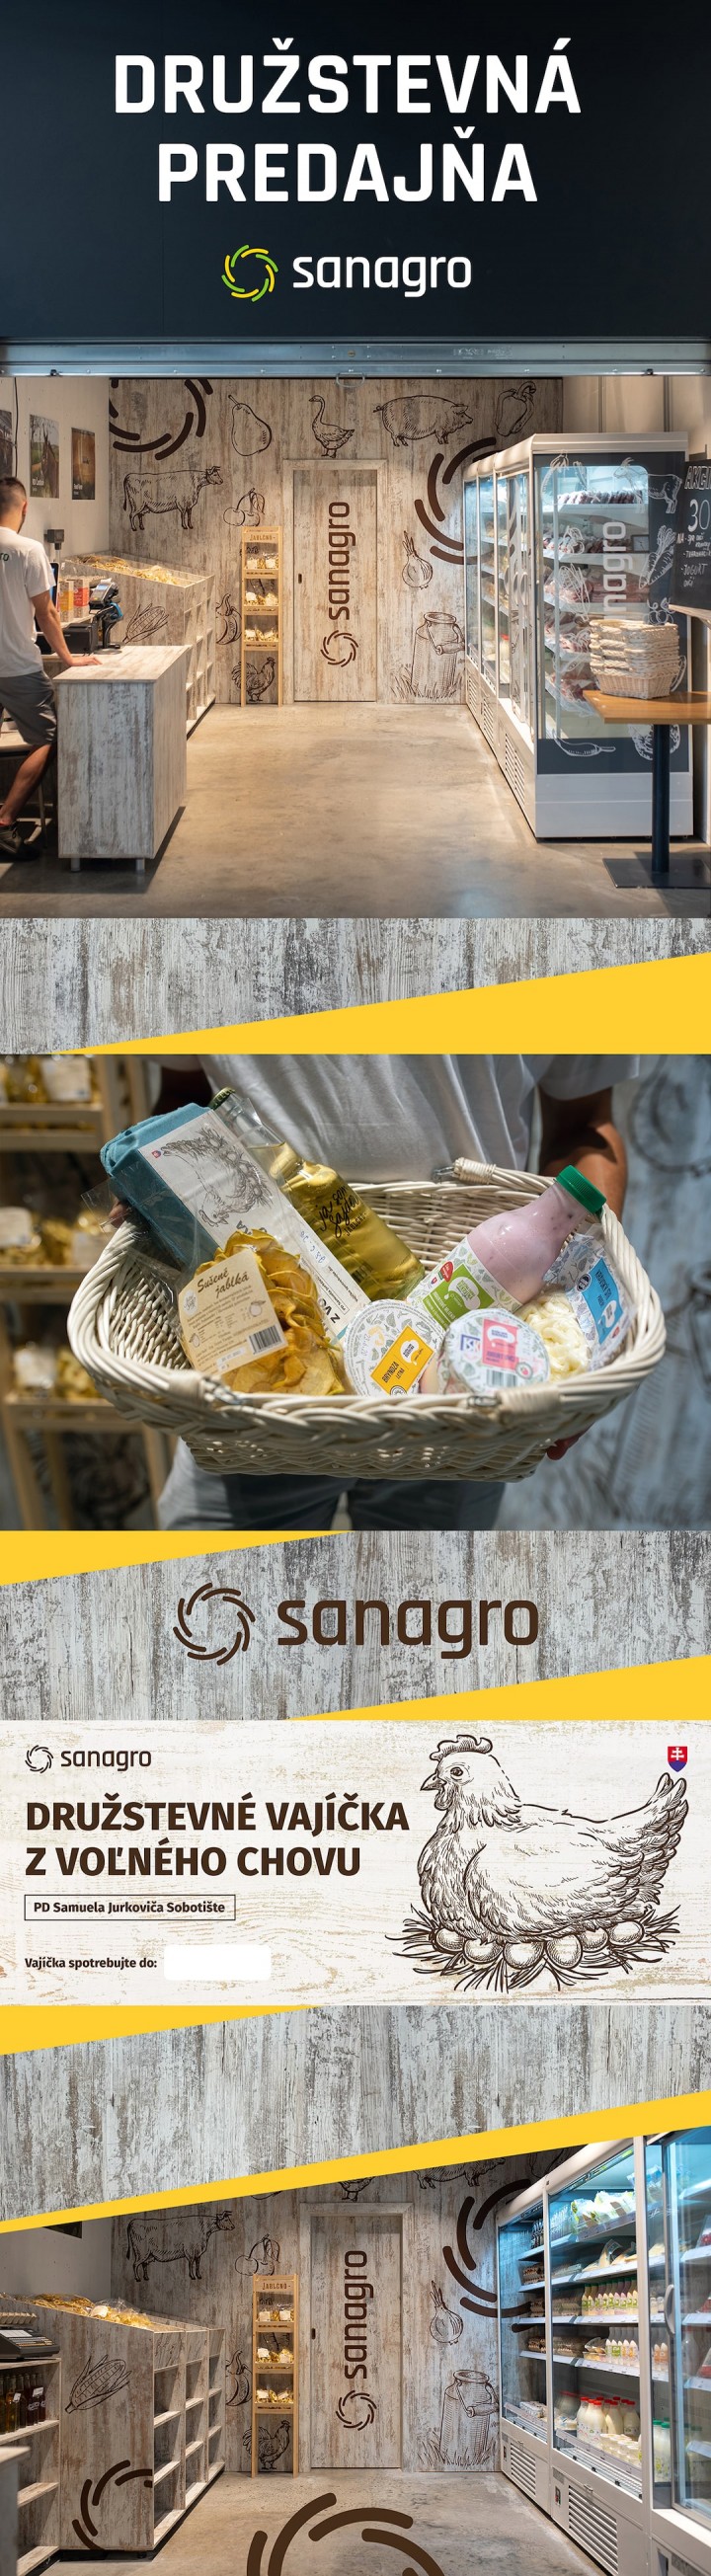 Sanagro predajňa